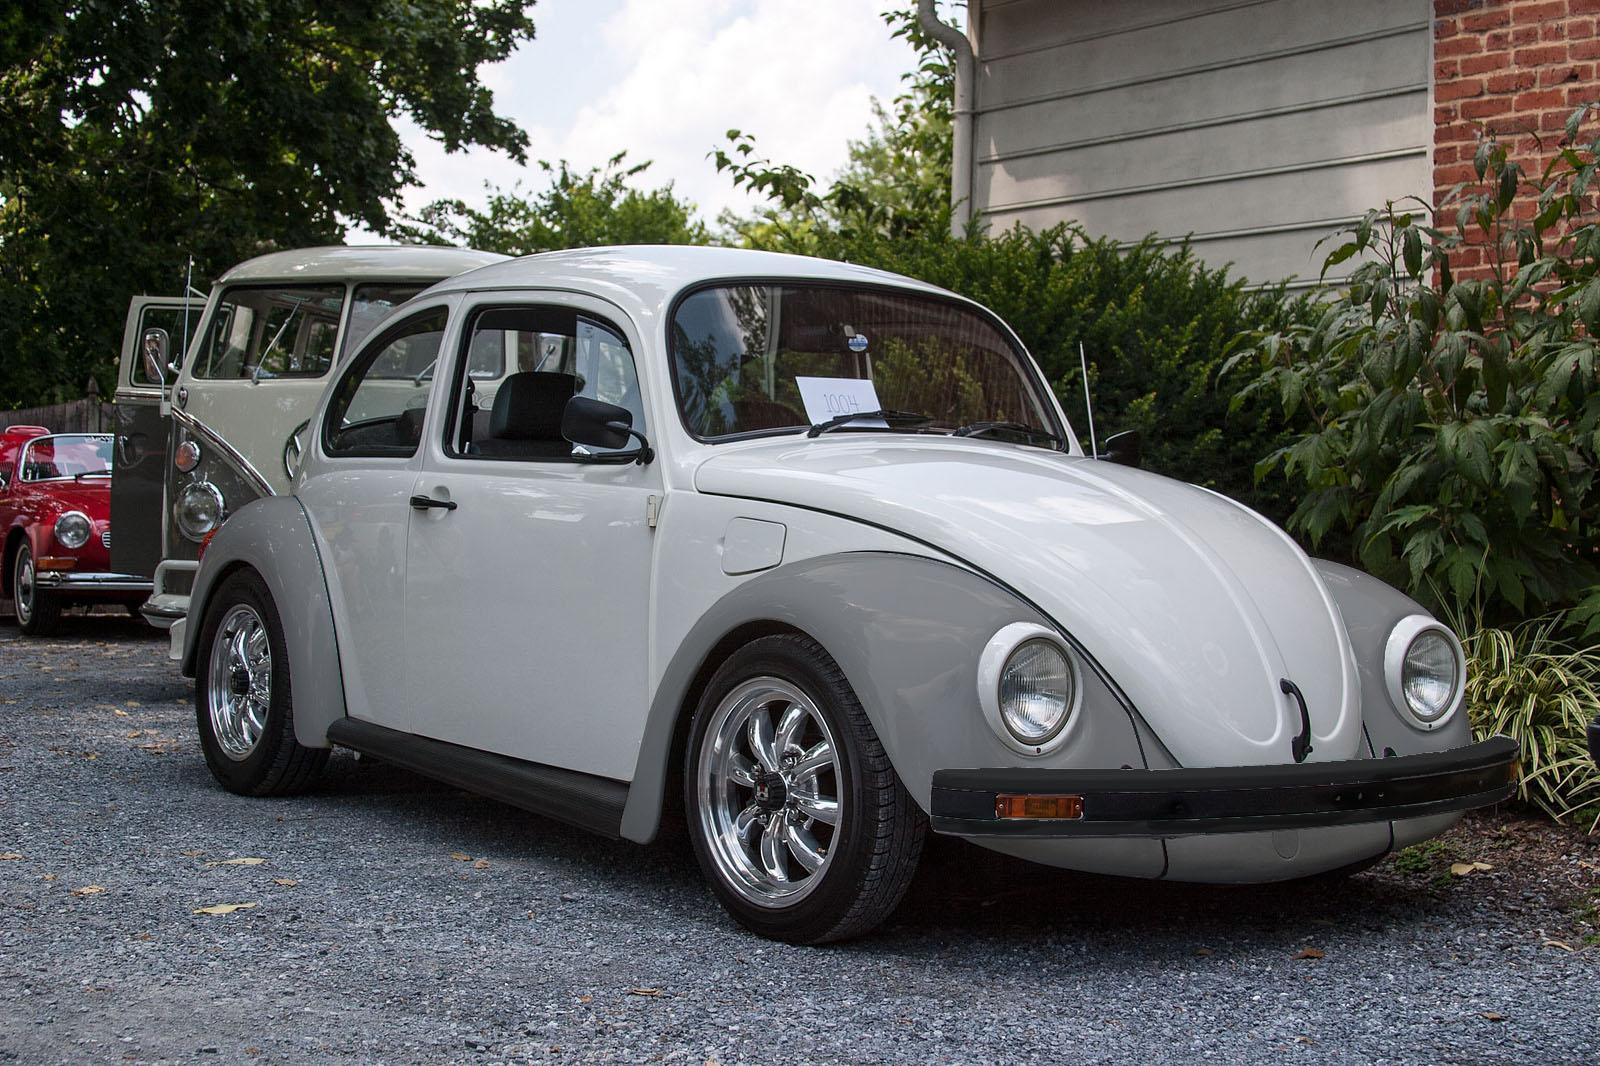 Ted Bundy 1968 Volkswagen Beetle Image - Uncle Jays Twisted Fork